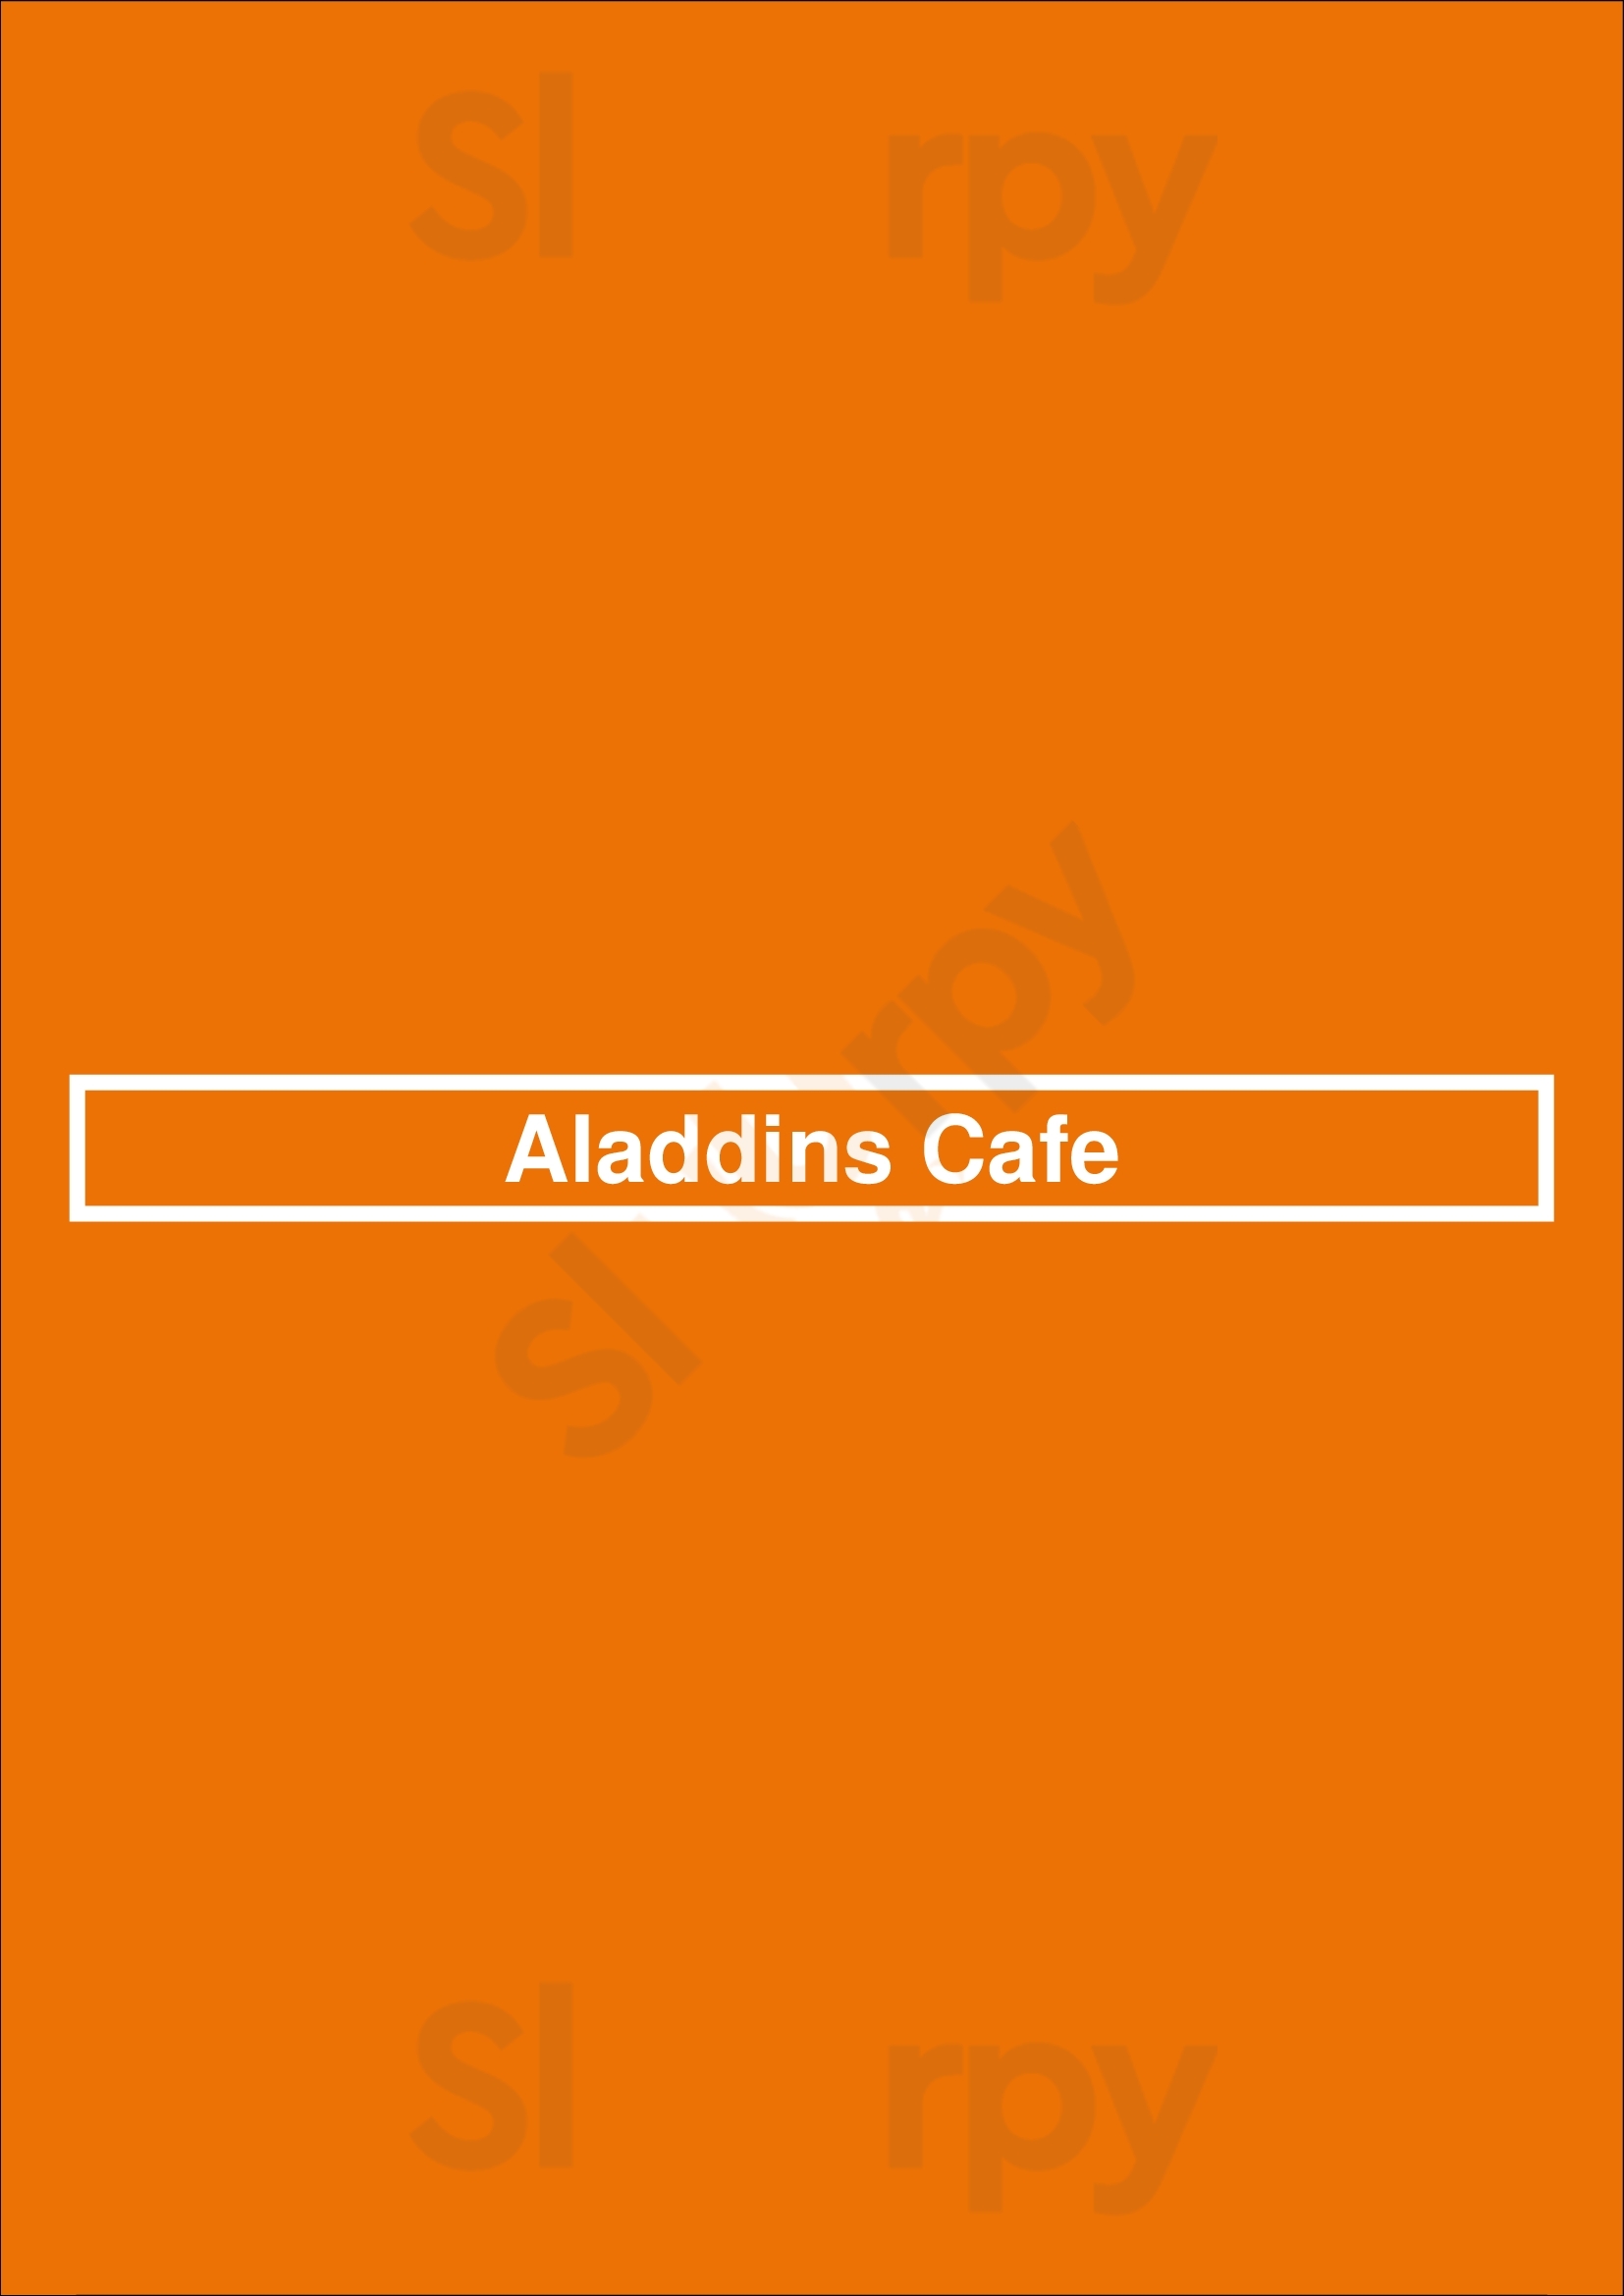 Aladdins Cafe Louisville Menu - 1